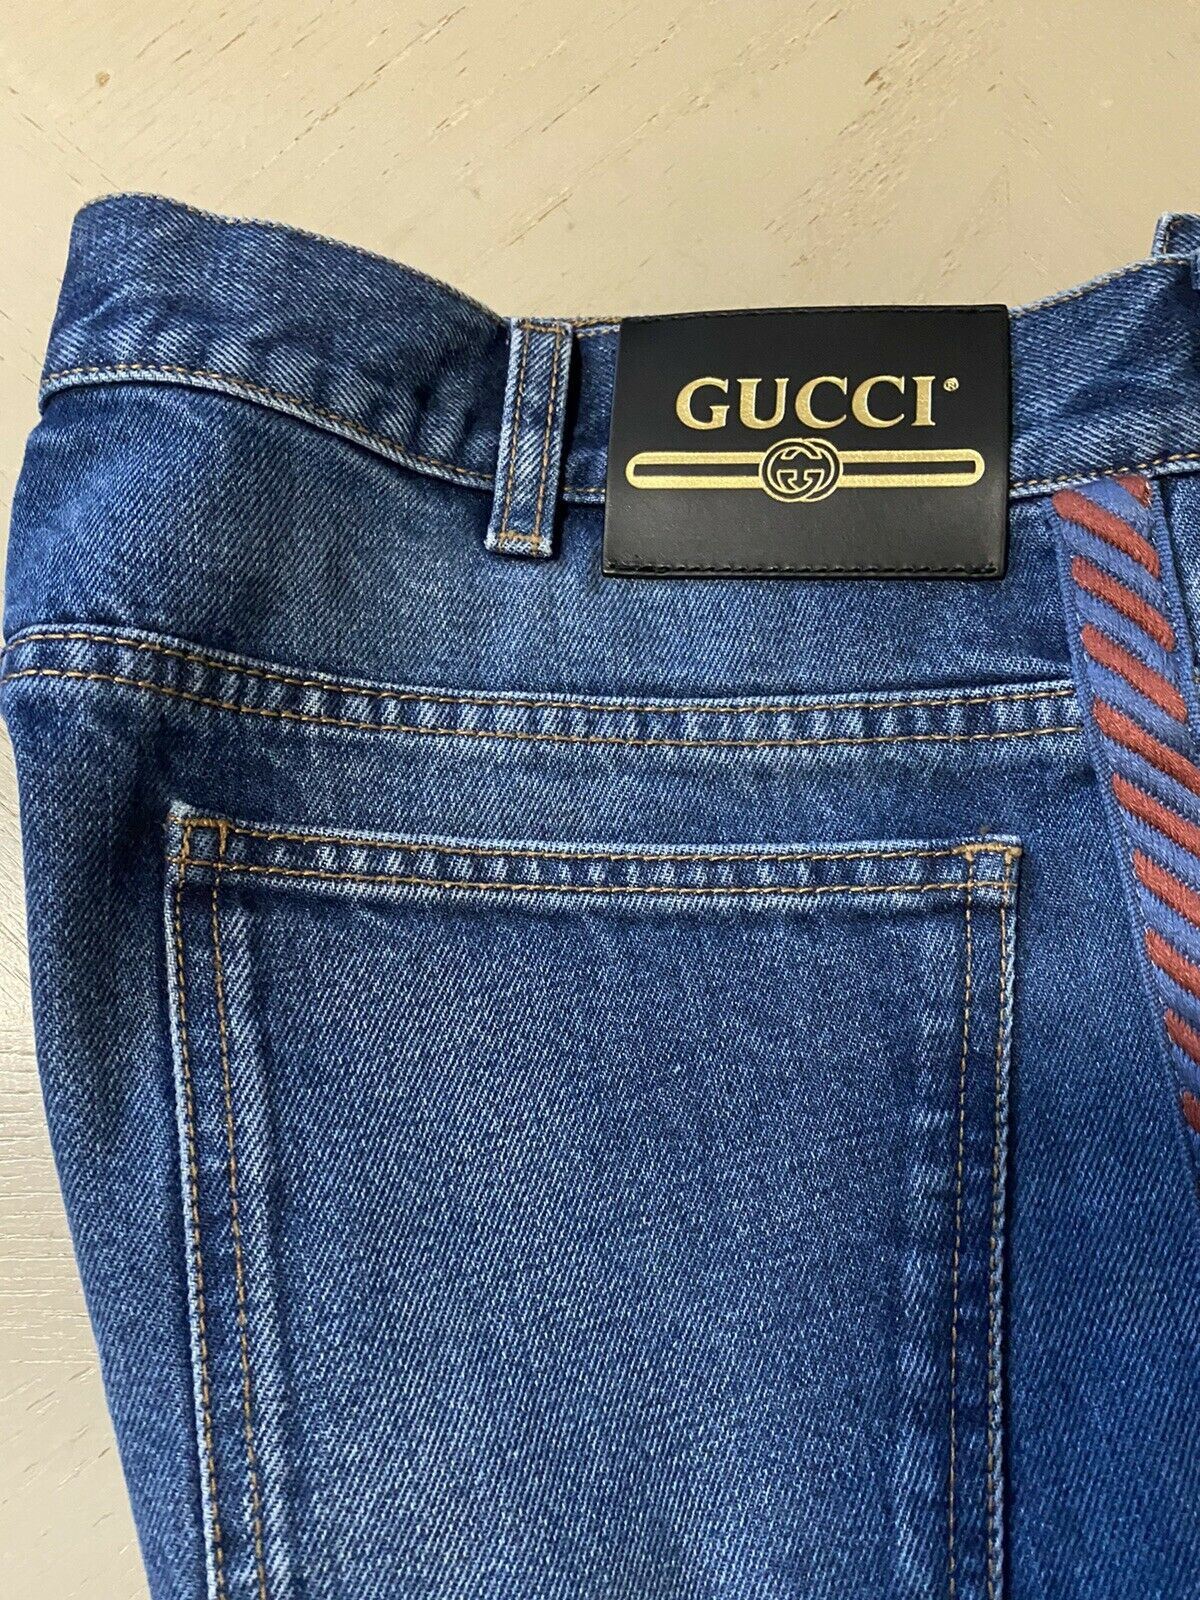 Neu mit Etikett: 1200 $ Gucci Herren-Jeanshose 36 US Italien